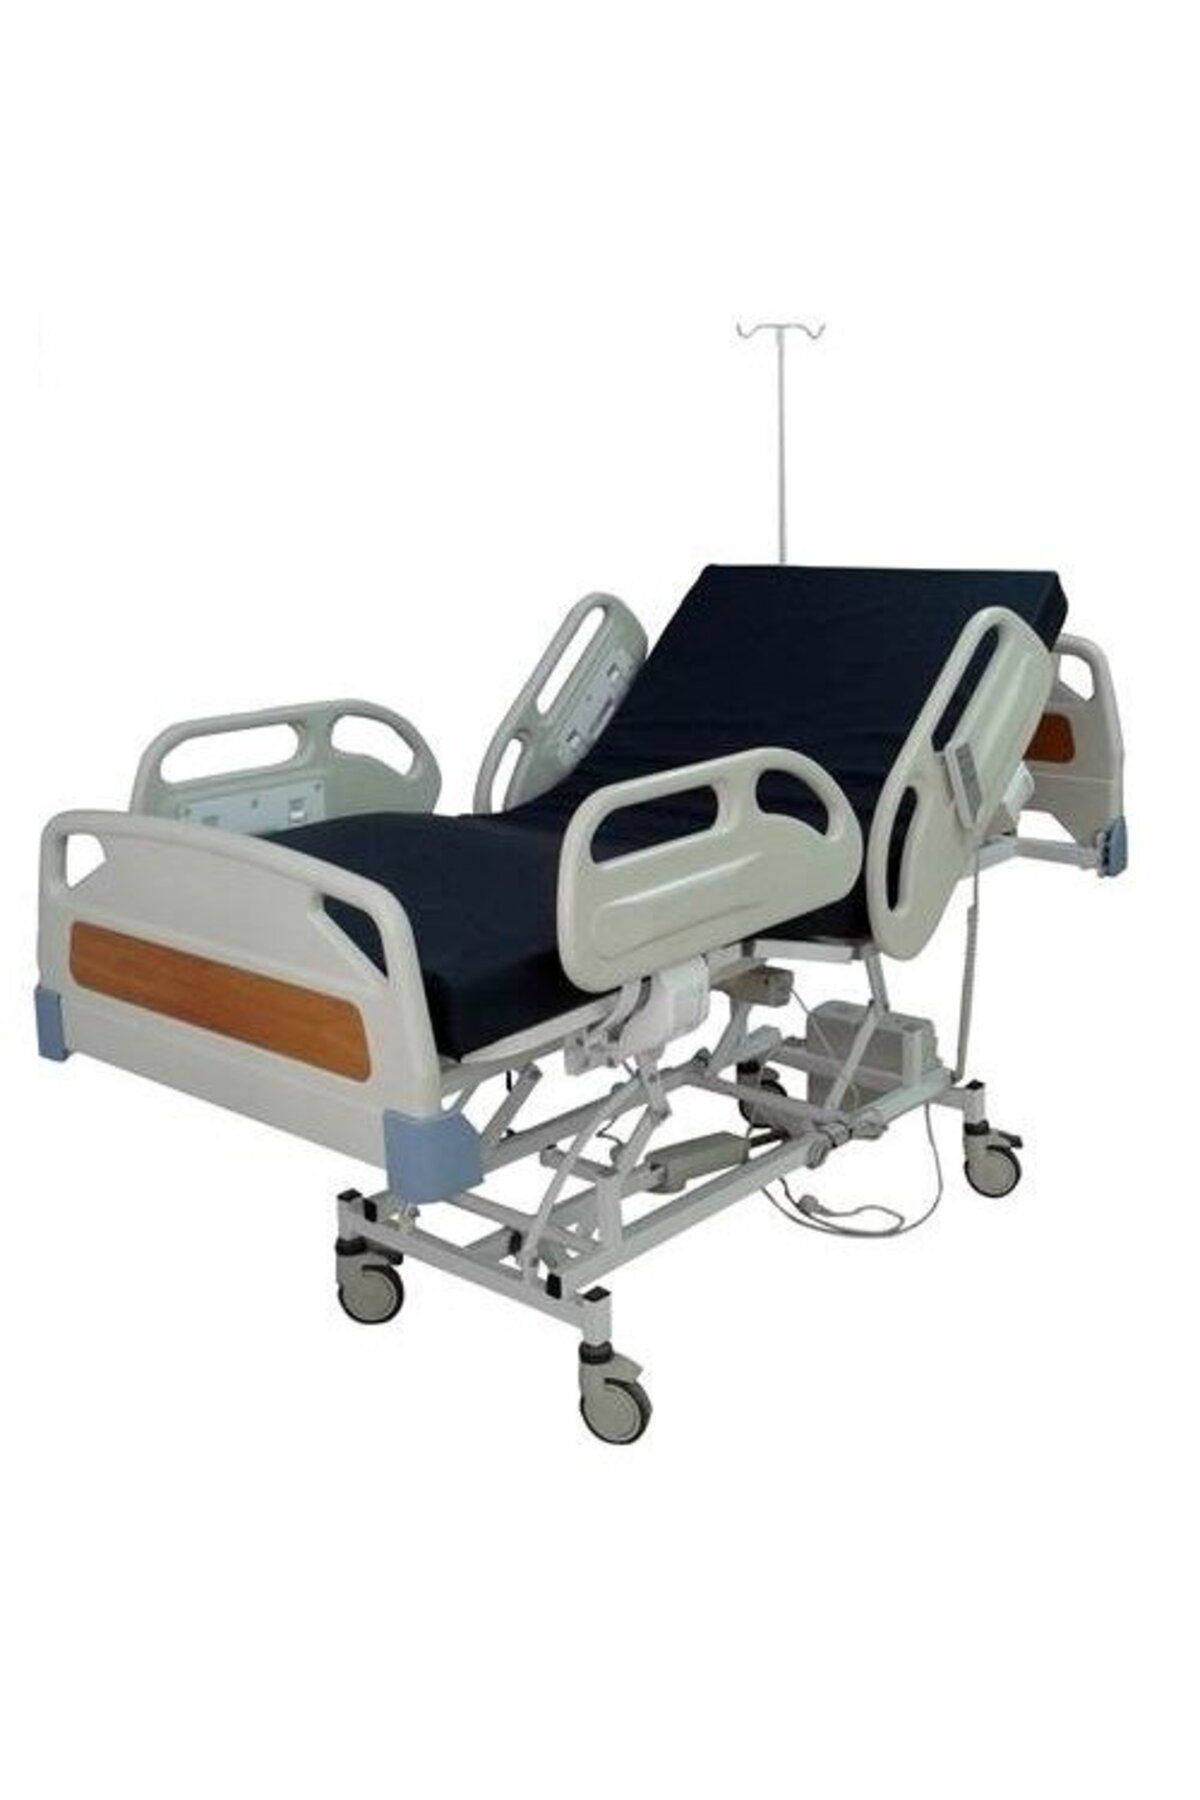 Genel Markalar Hasta Karyolası 3 Motorlu Hastane Yatağı 3 Motorlu